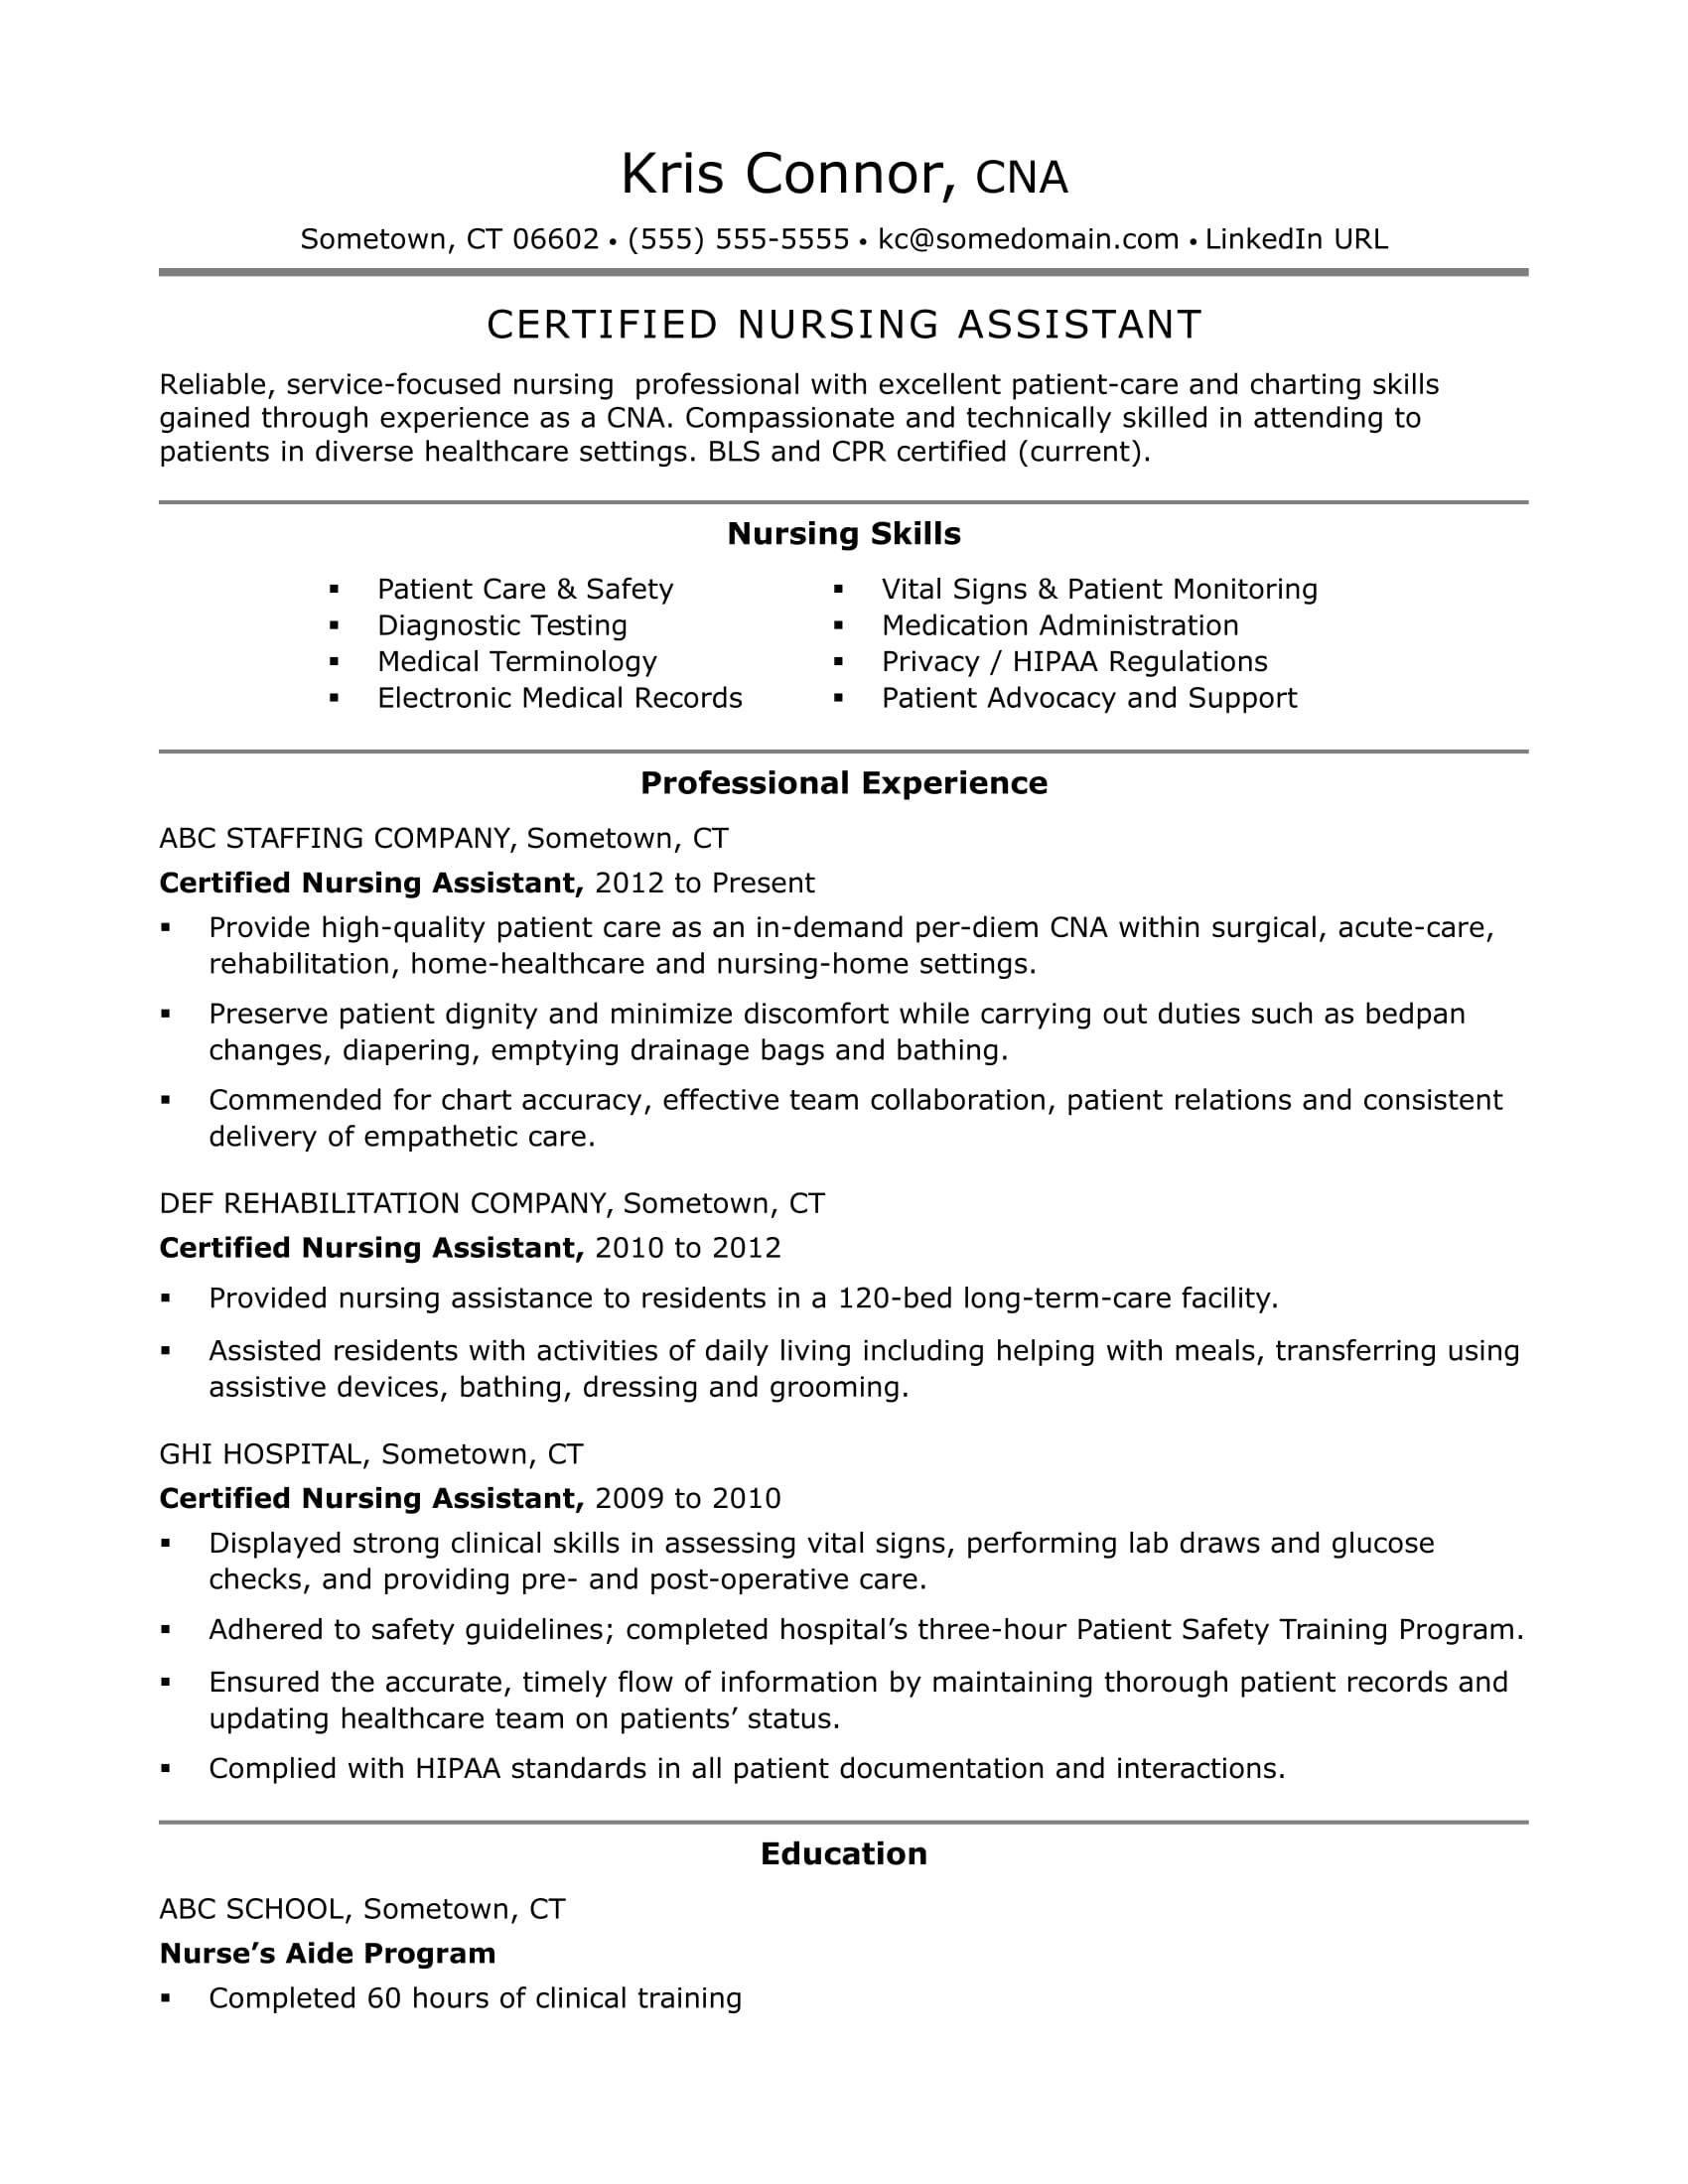 Sample Professional Summary for Nursing Resume Cna Resume Examples: Skills for Cnas Monster.com